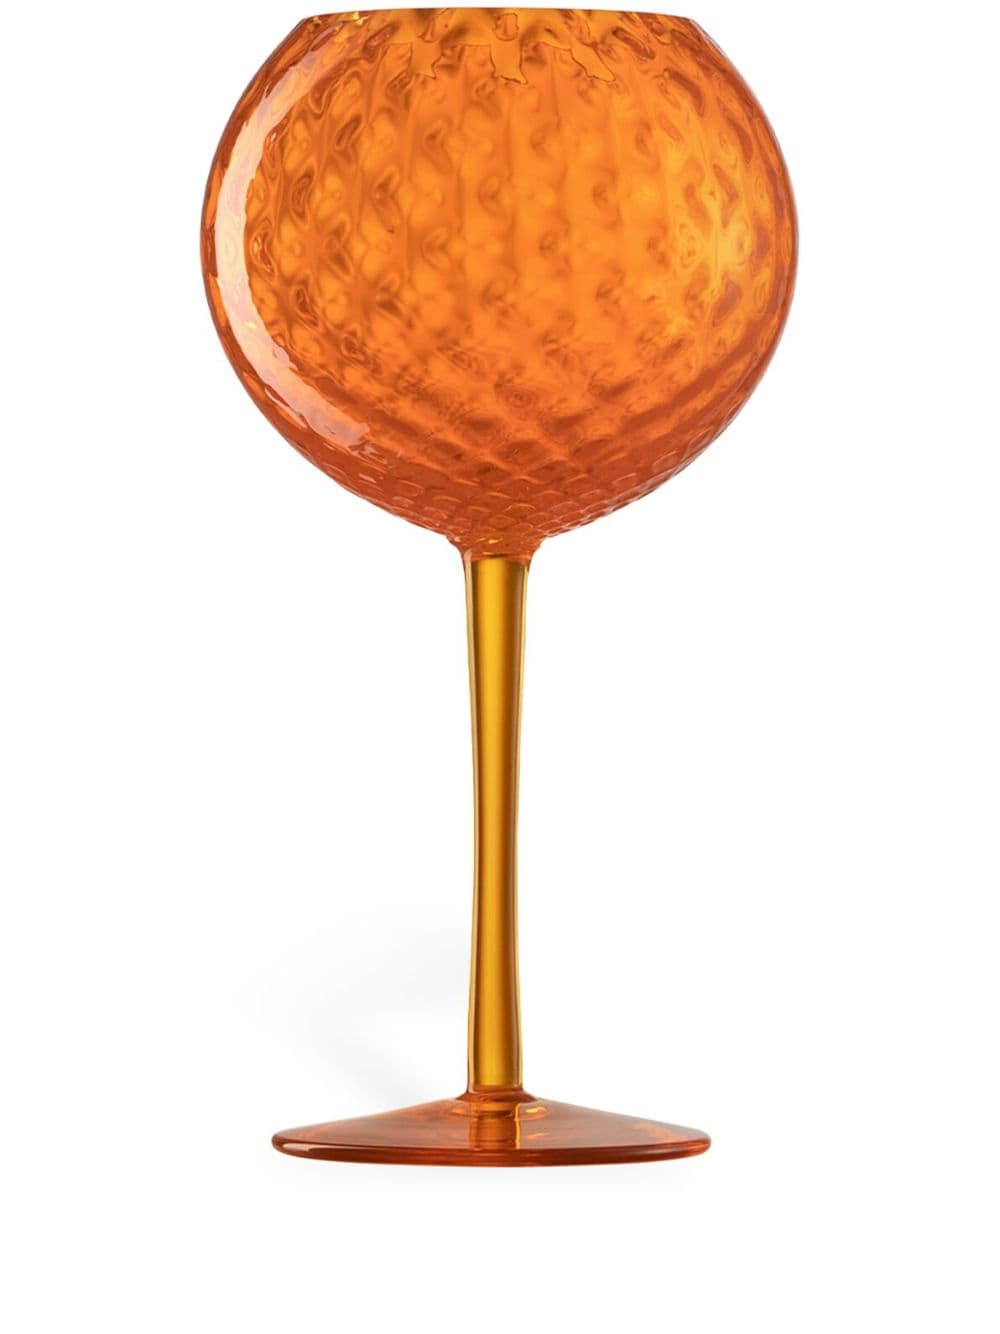 Nasonmoretti Gigolo Wine Glass In Orange